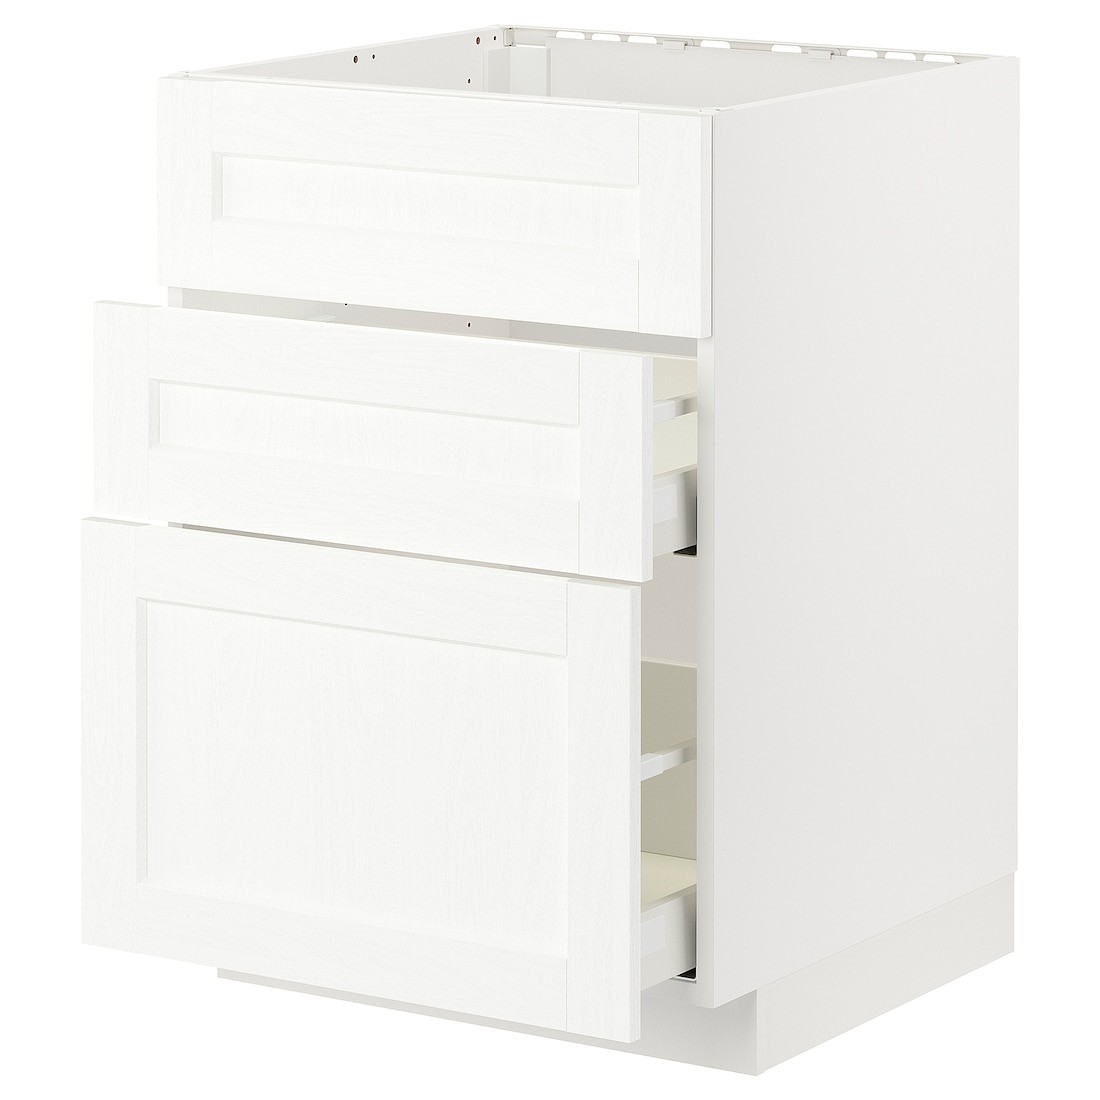 IKEA METOD МЕТОД / MAXIMERA МАКСИМЕРА Напольный шкаф для варочной панели / вытяжка с ящиком, белый Enköping / белый имитация дерева, 60x60 см 79477546 794.775.46